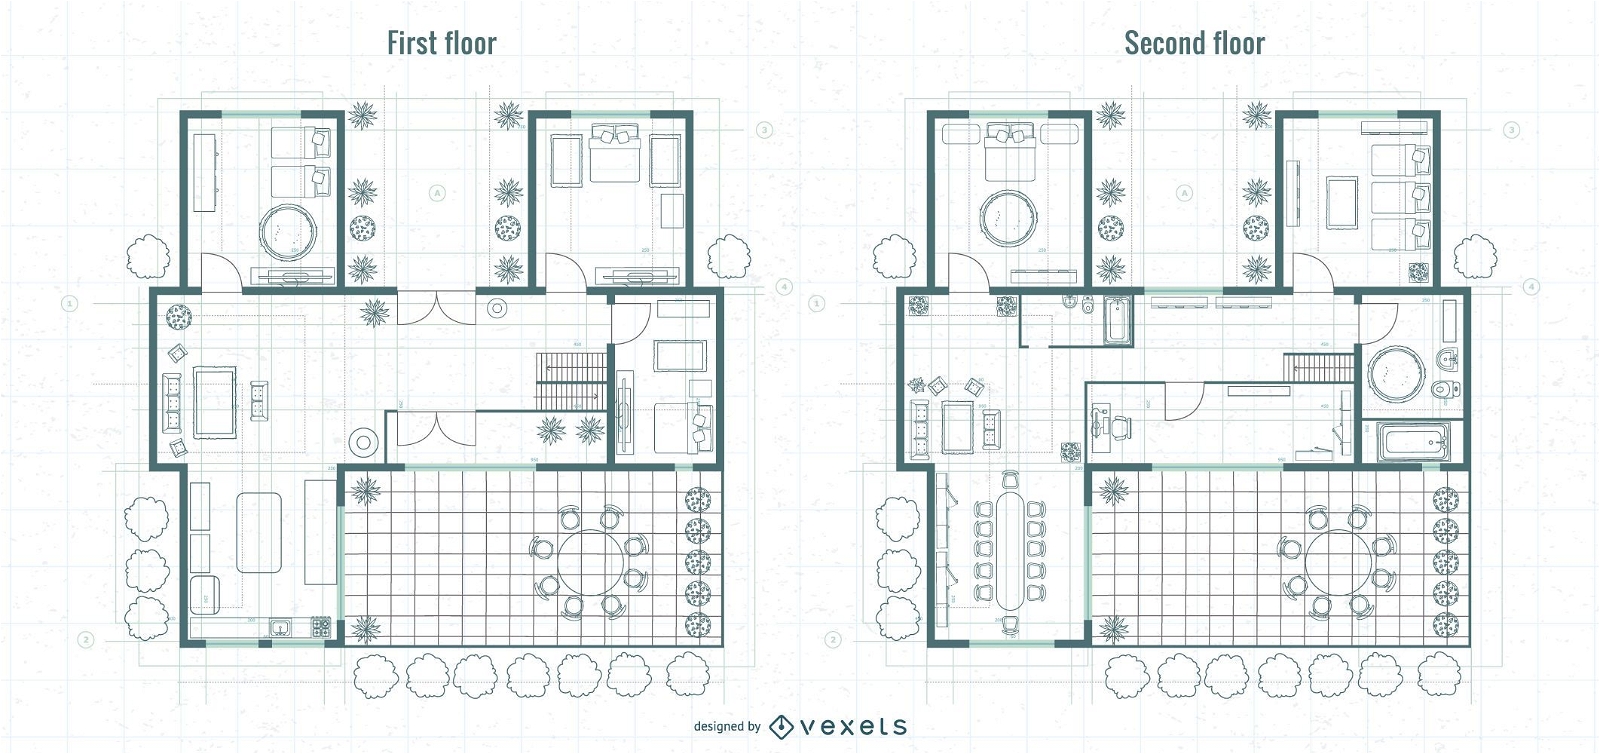 Architektur First and Upper Floor Blueprint Design